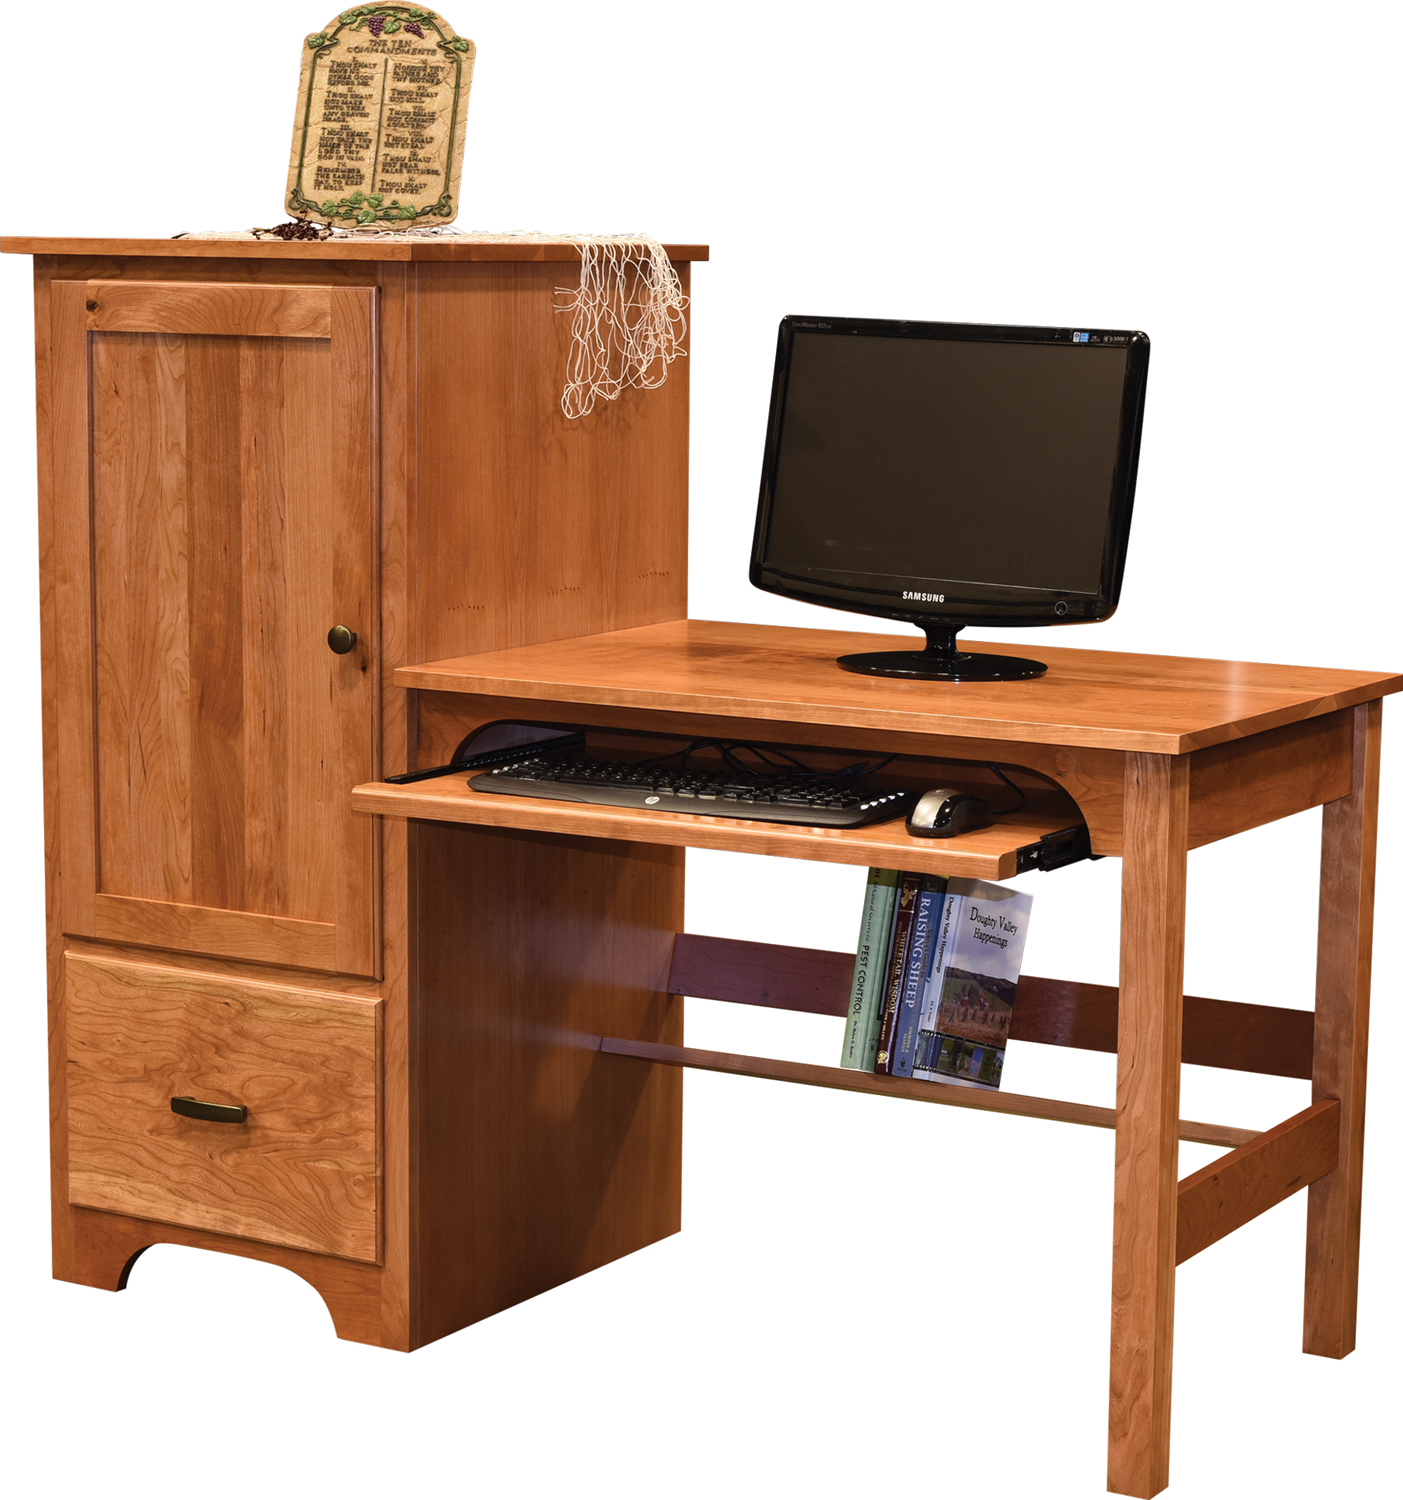 Clark Computer Desk in Cherry with OCS-103 MX